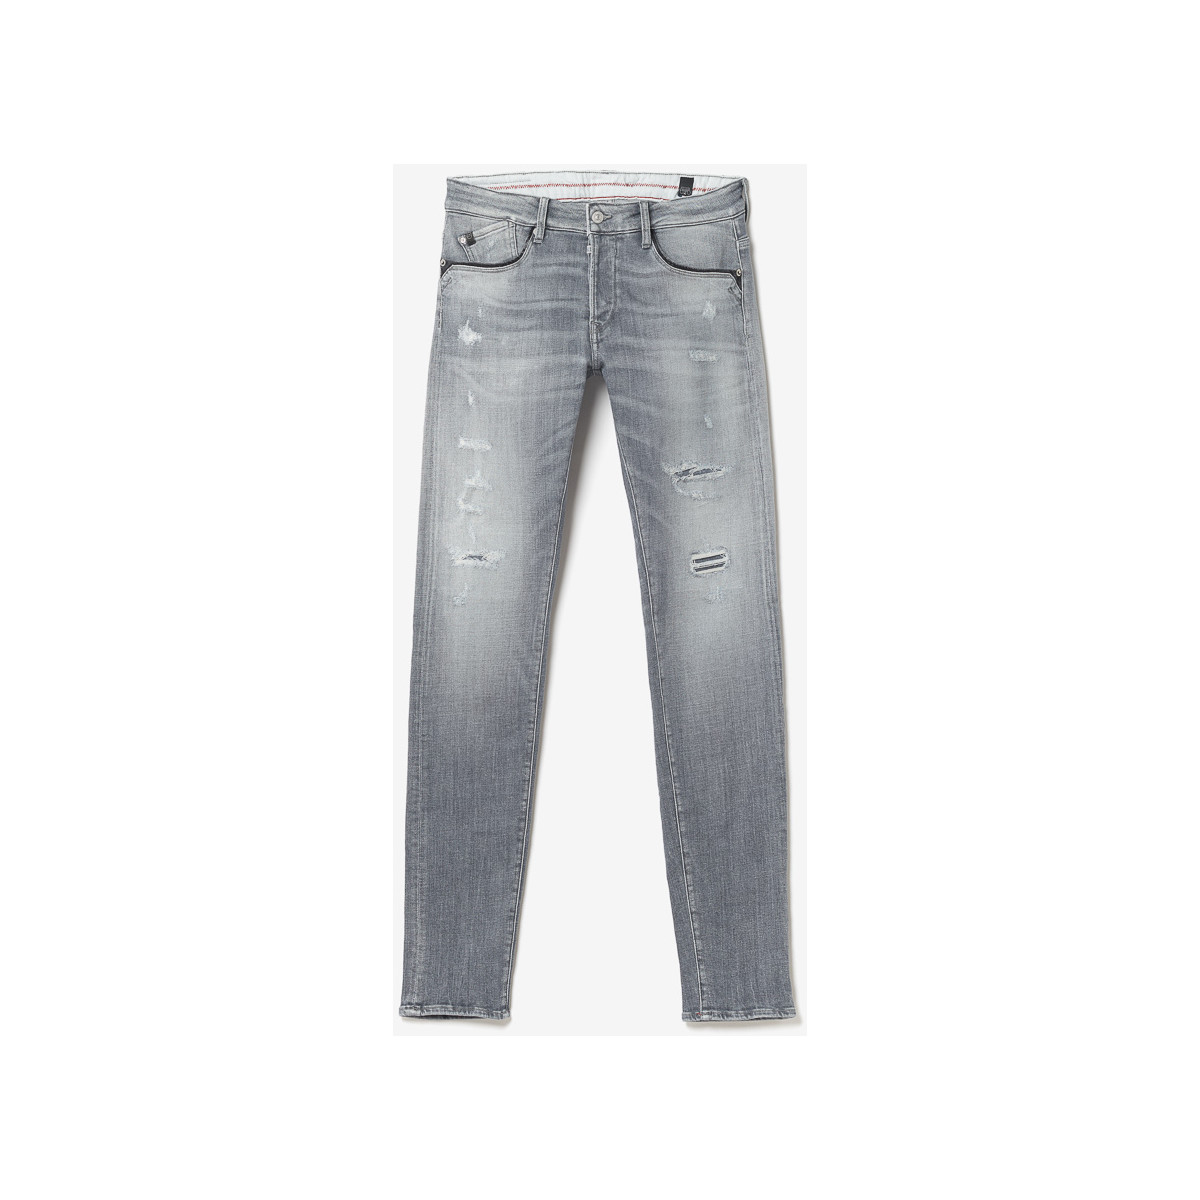 Le Temps des Cerises Gris Triolet 700/11 adjusted jeans destroy gris RFWQr8D2